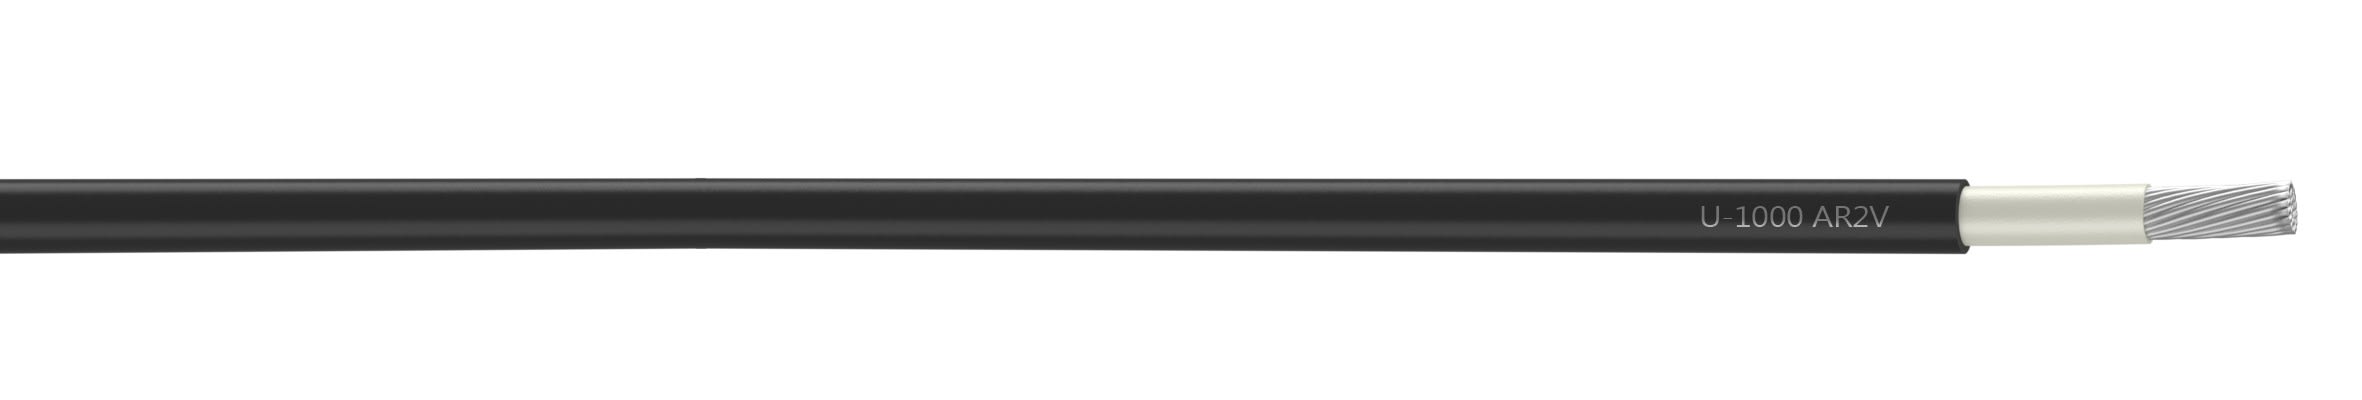 Nexans - Câble rigide U-1000 AR2V aluminium 1x150 longueur à la coupe